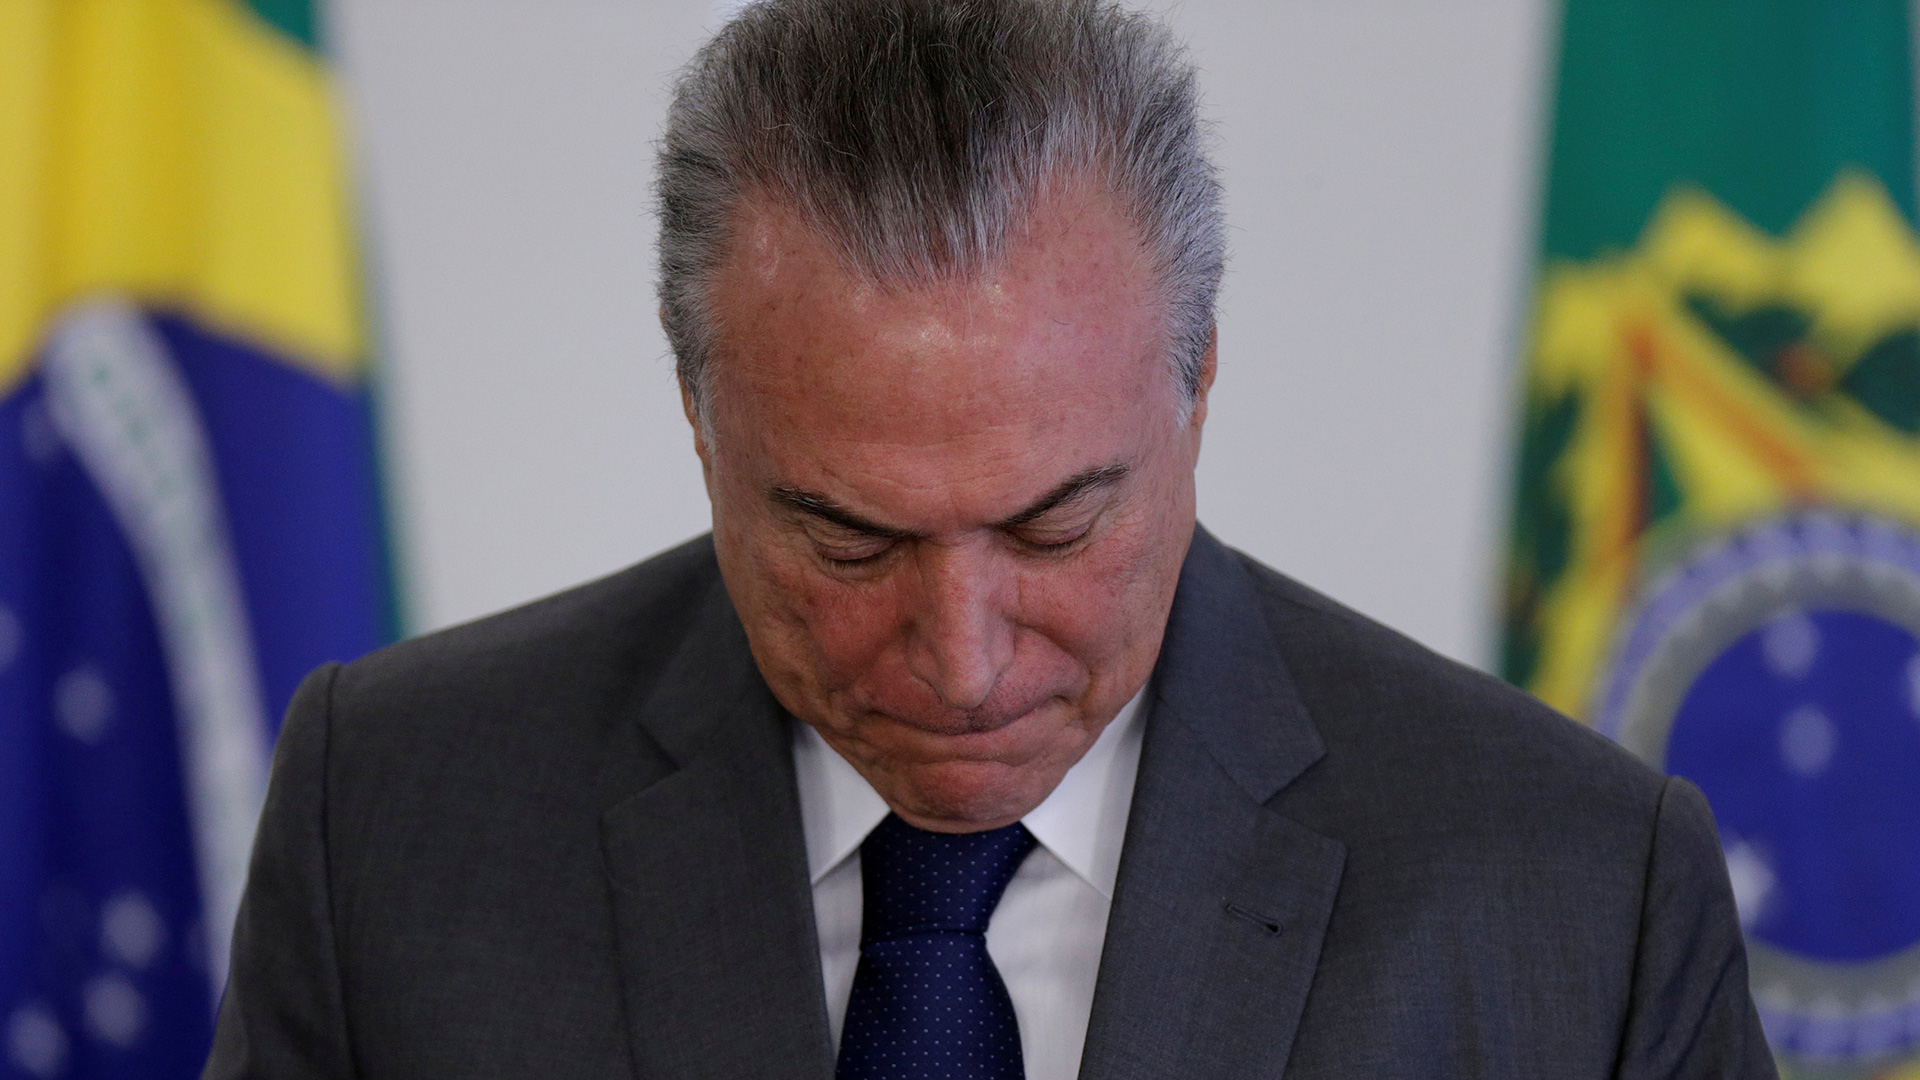 La Corte suprema de Brasil autoriza una investigación contra el presidente Temer